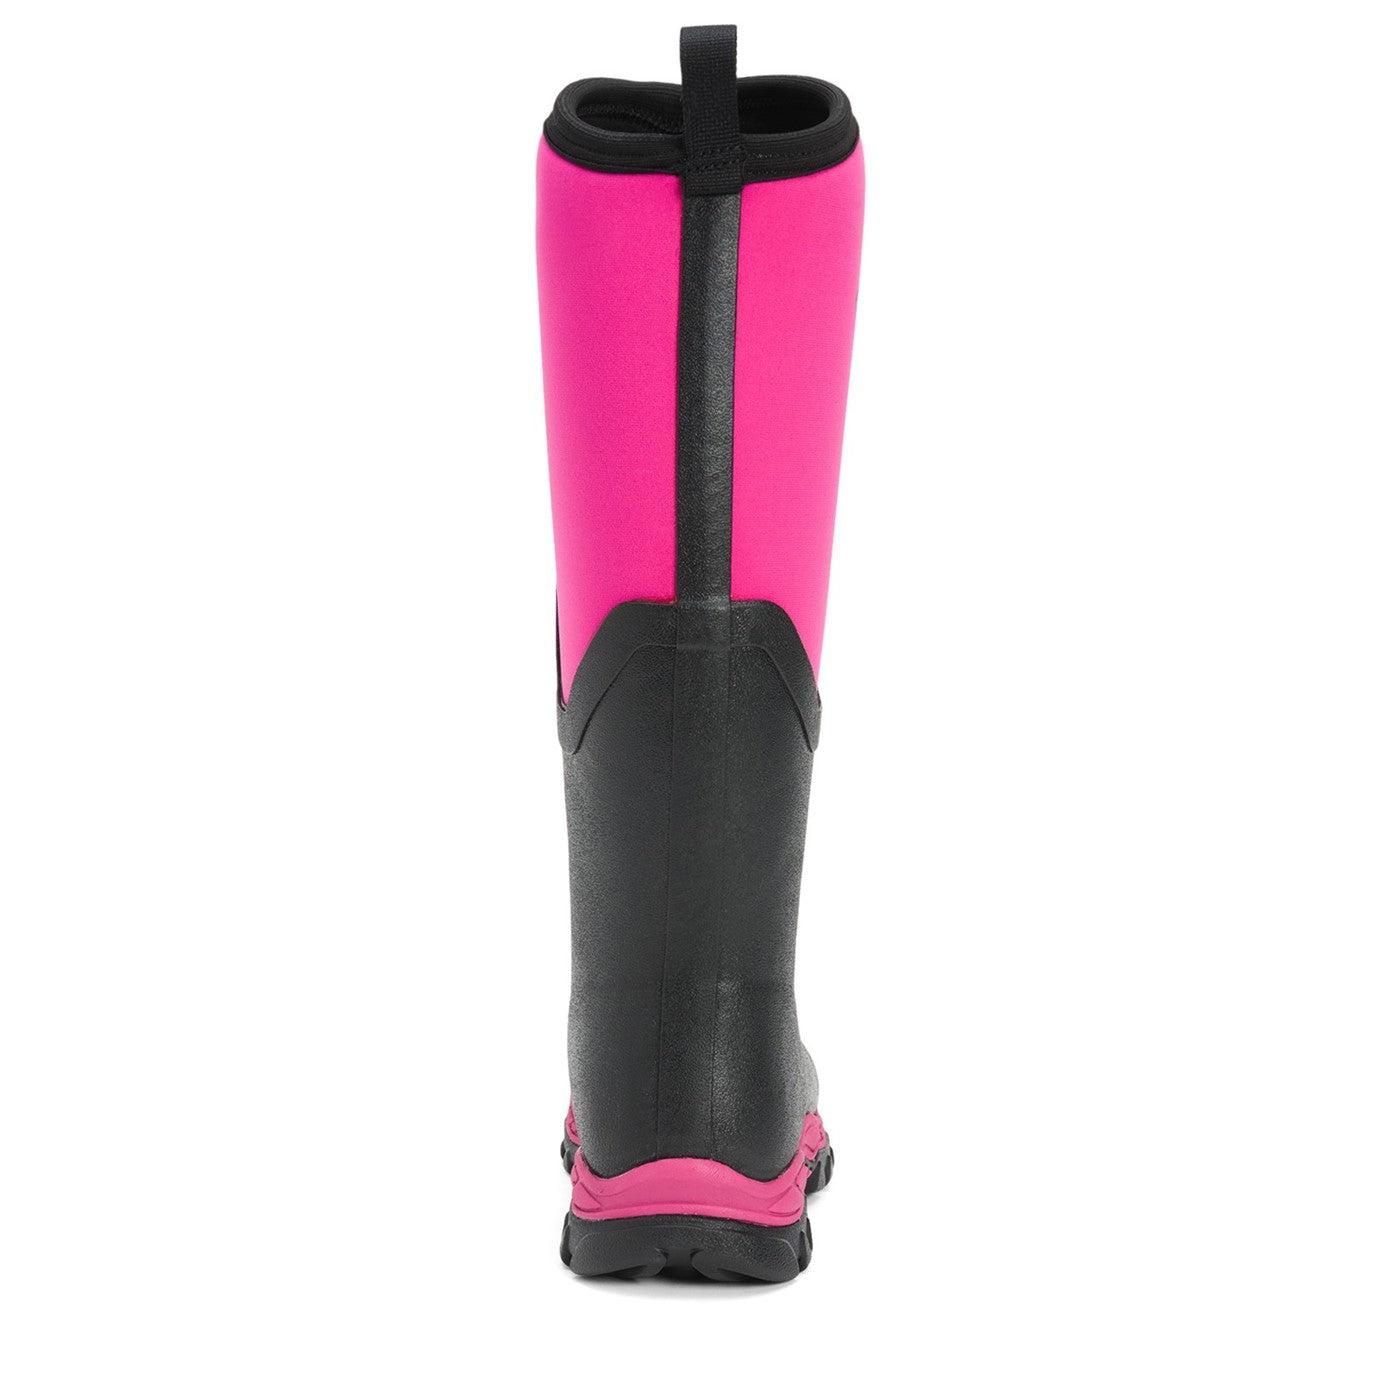 Damen Arctic Sport II Stiefel Hot Pink